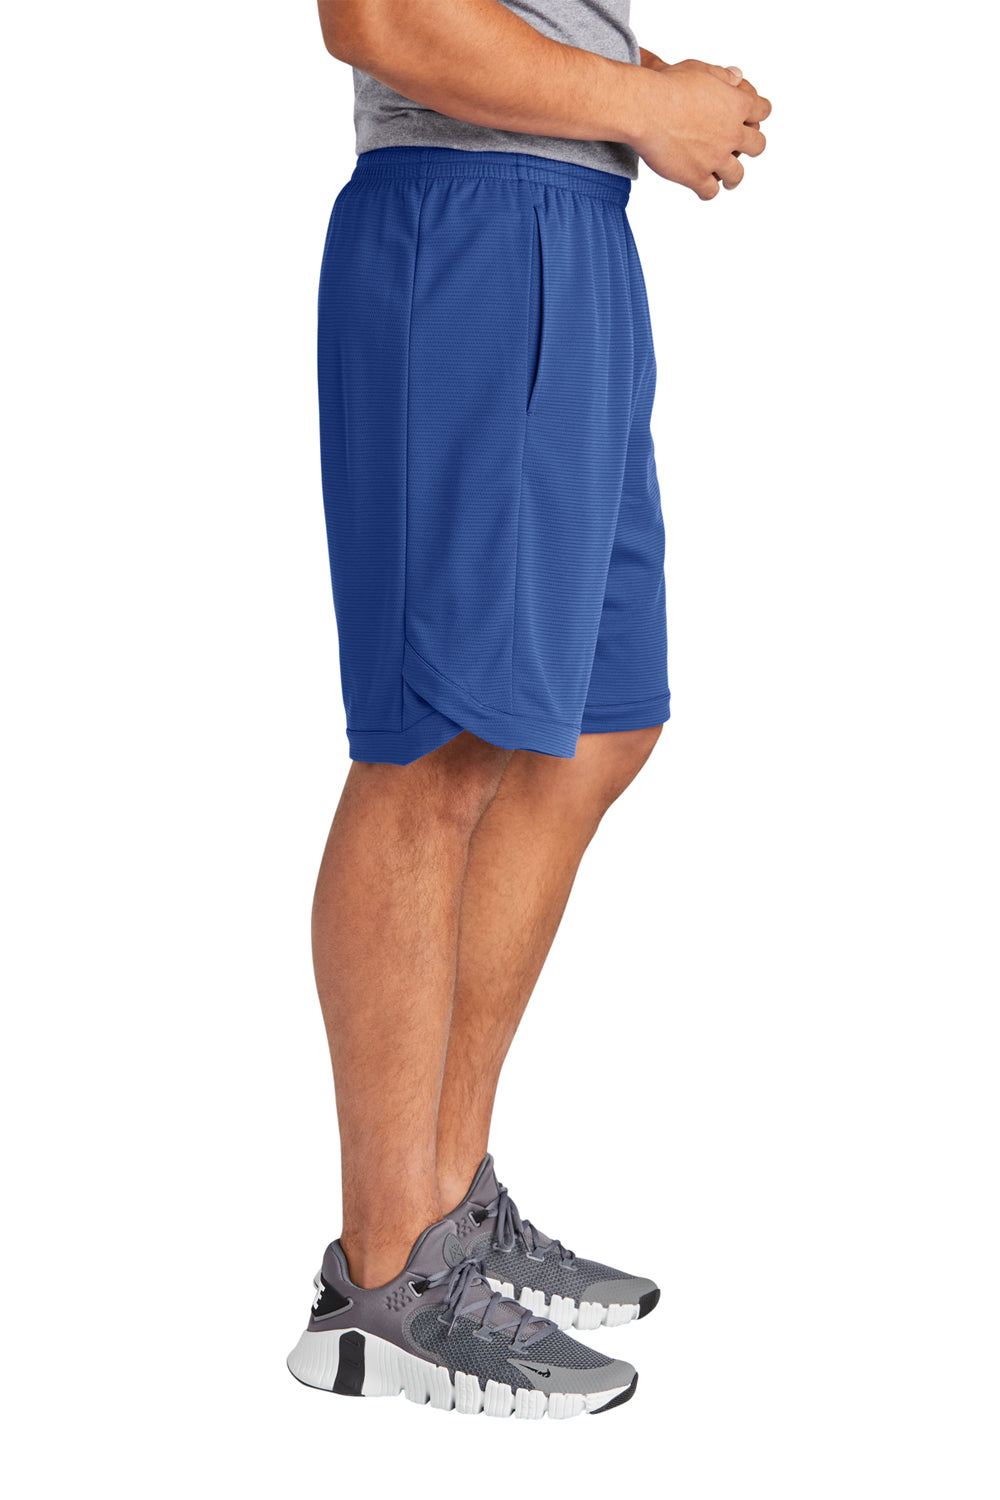 Sport-Tek ST575 Position PosiCharge Shorts w/ Pockets True Royal Blue Side